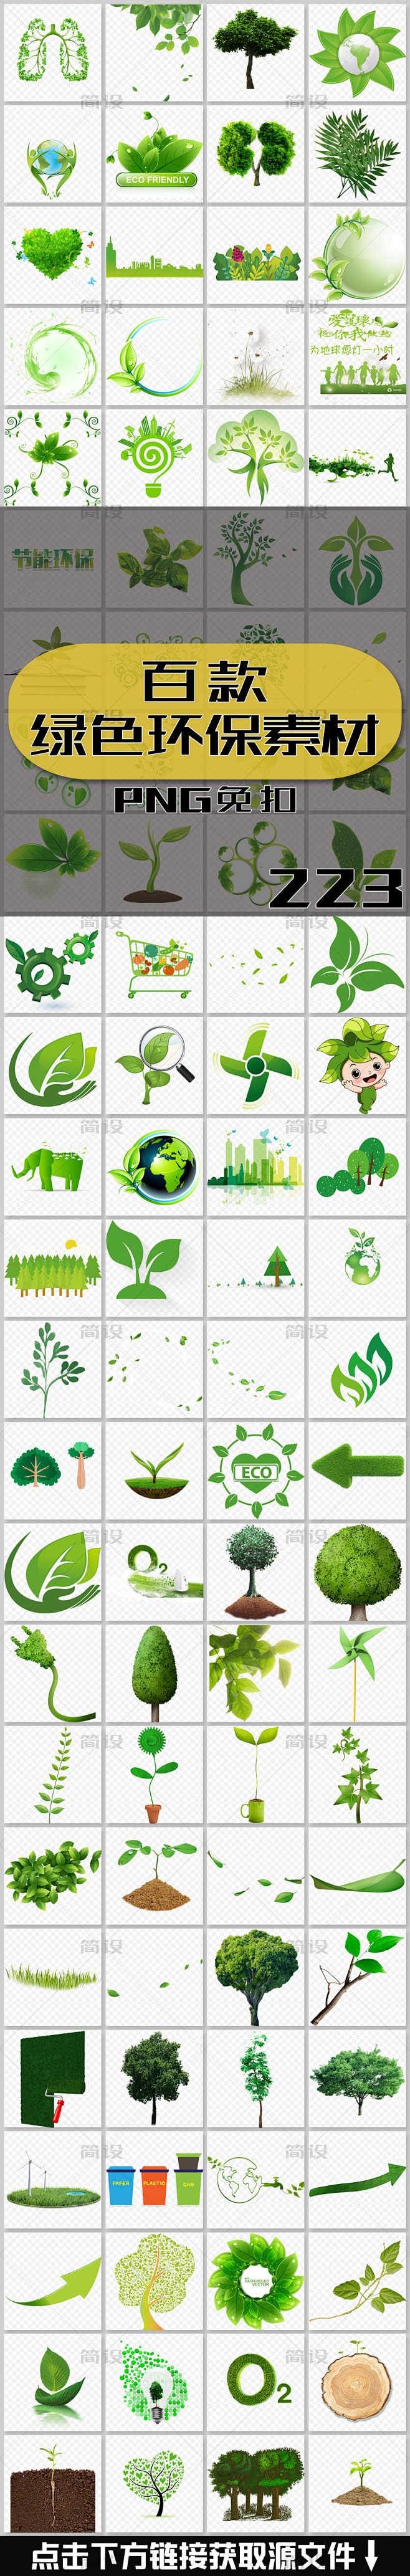 环保标志 环保海报 环保小报 低碳环保 ...